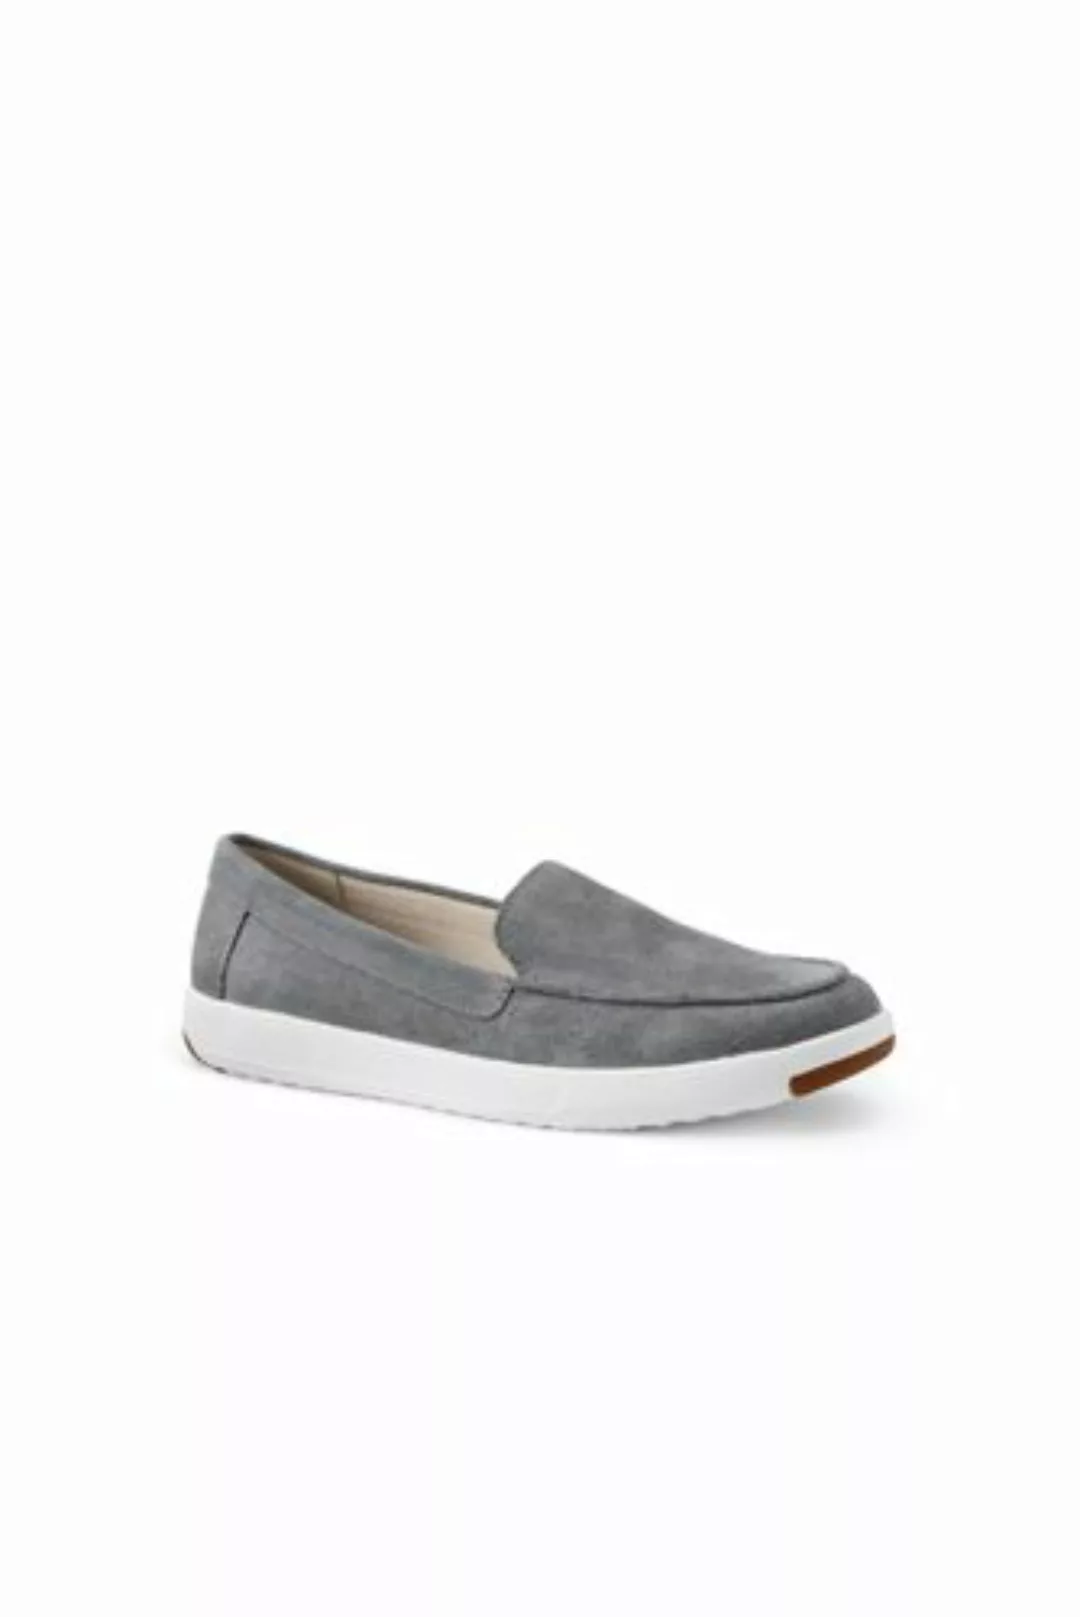 Federleichte Komfort-Loafer, Damen, Größe: 37 Normal, Grau, Rauleder, by La günstig online kaufen